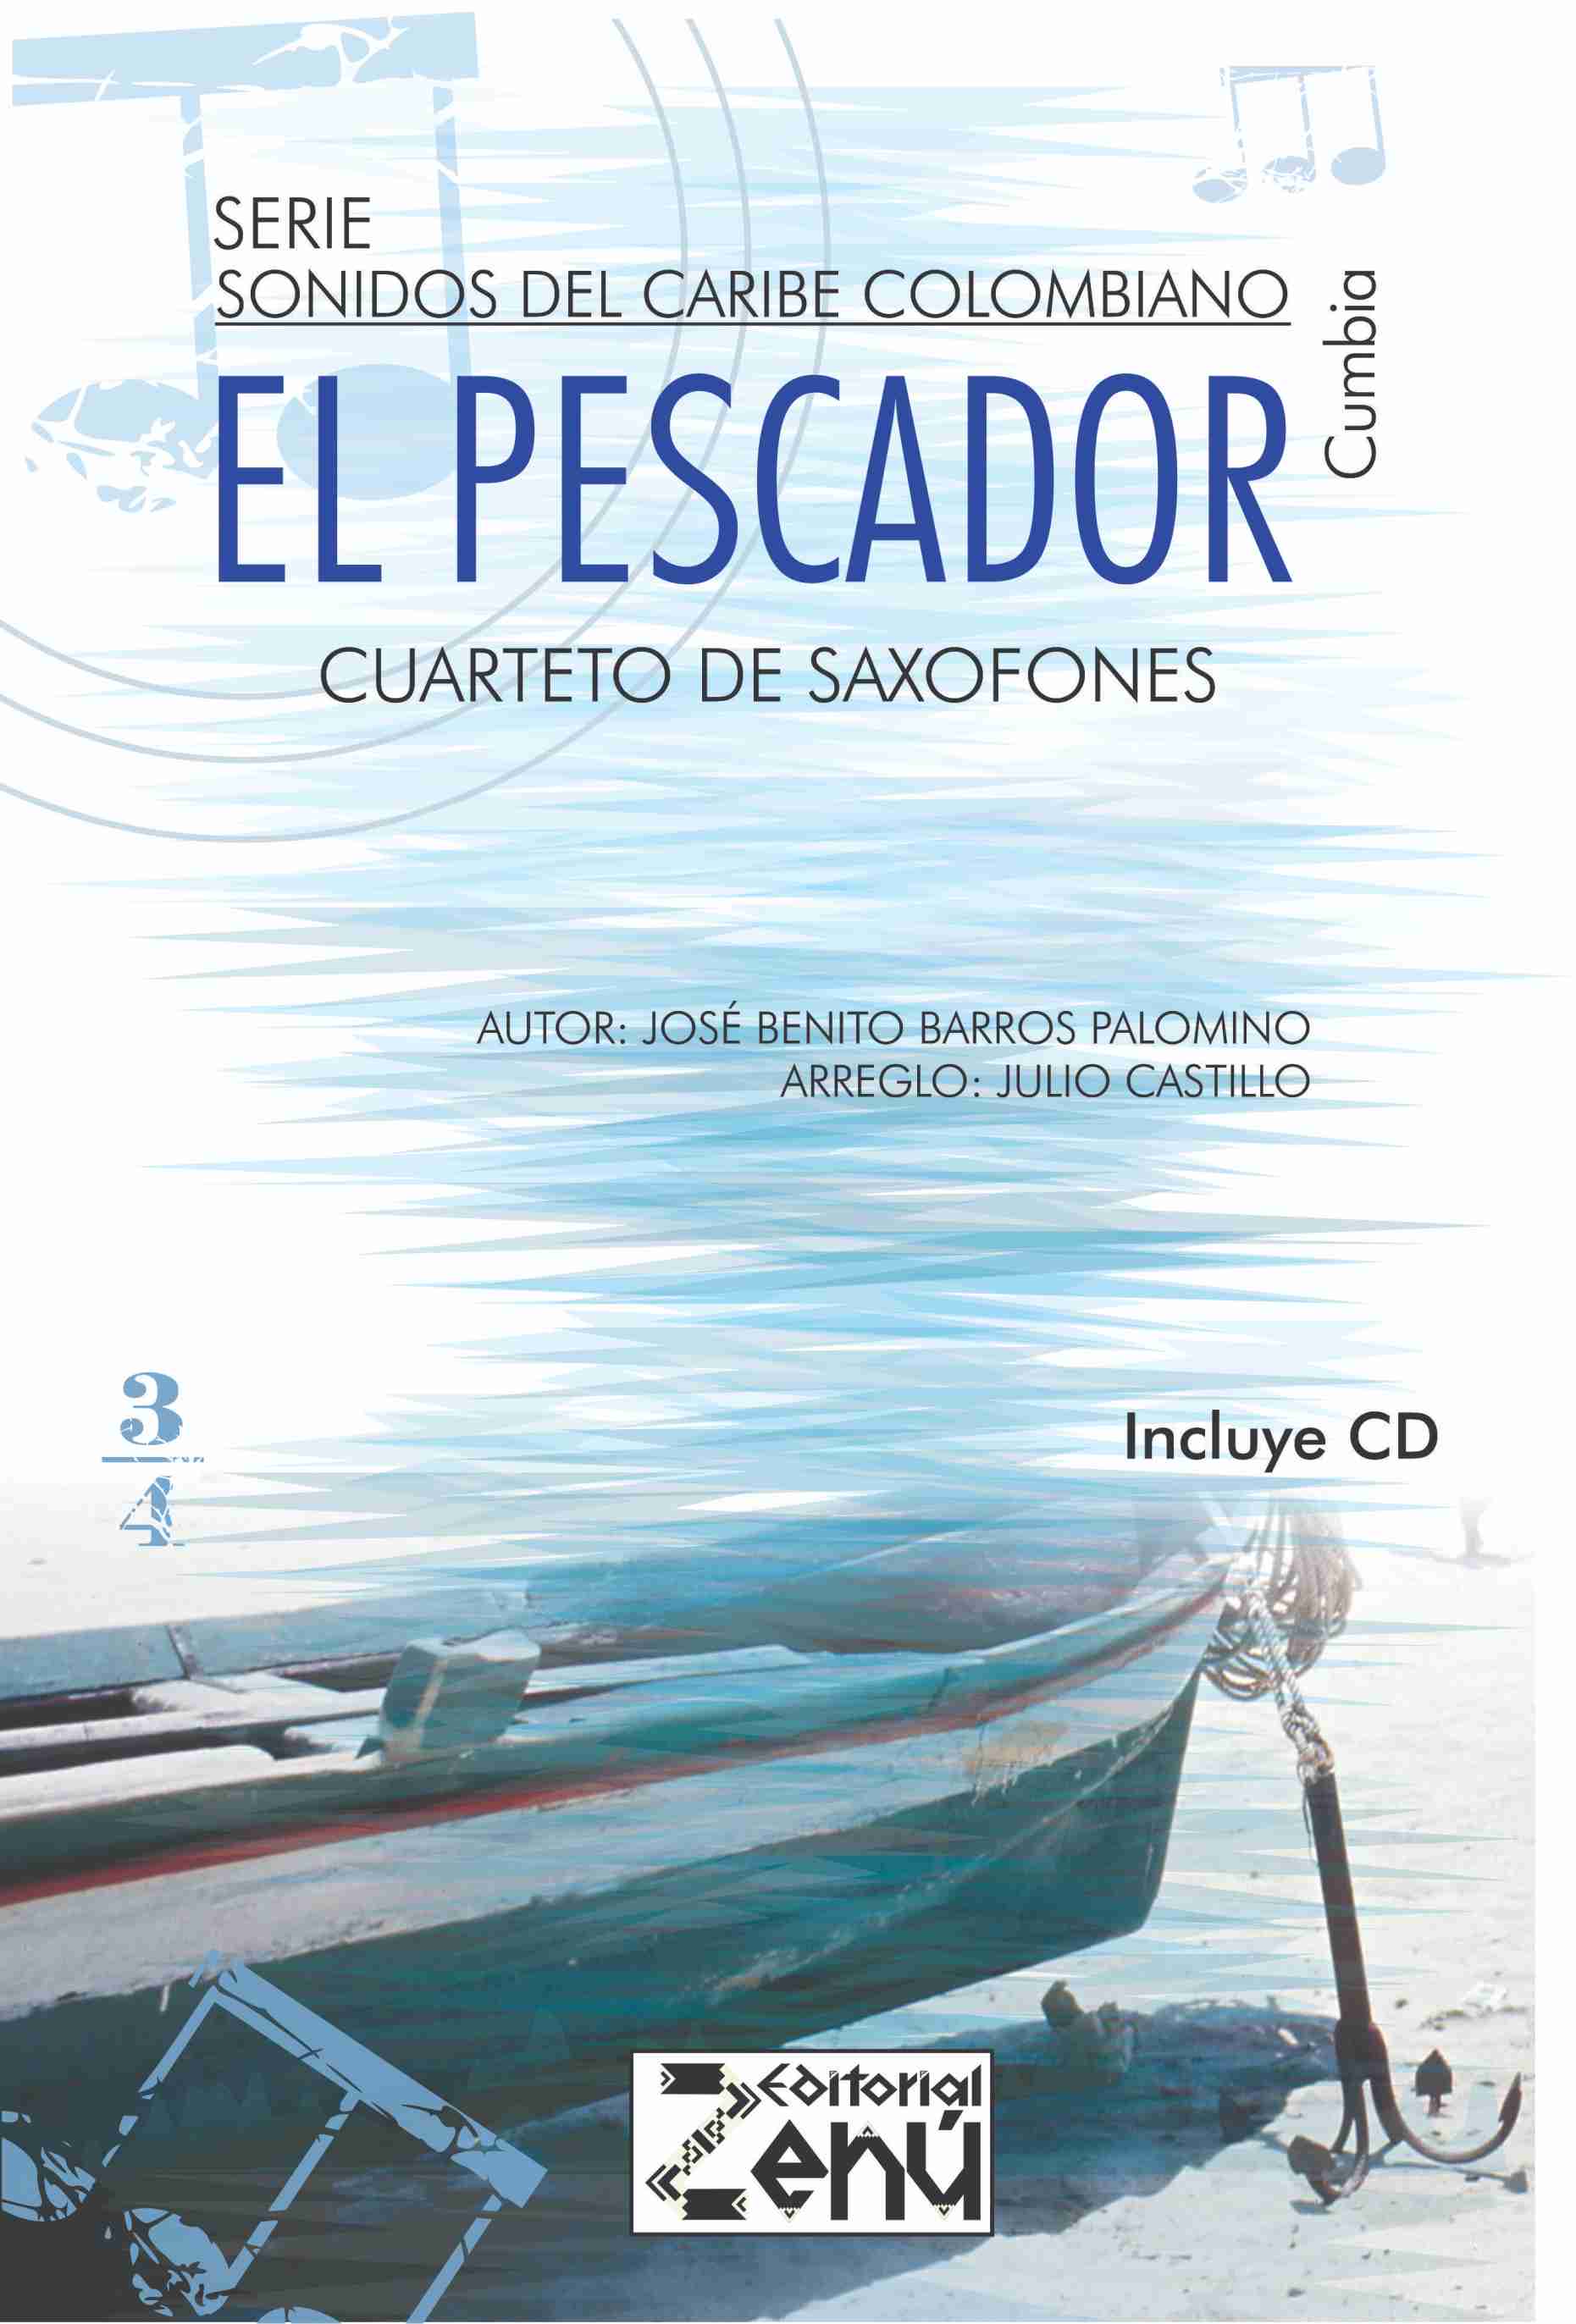 Serie Sonidos del Caribe colombiano - El pescador